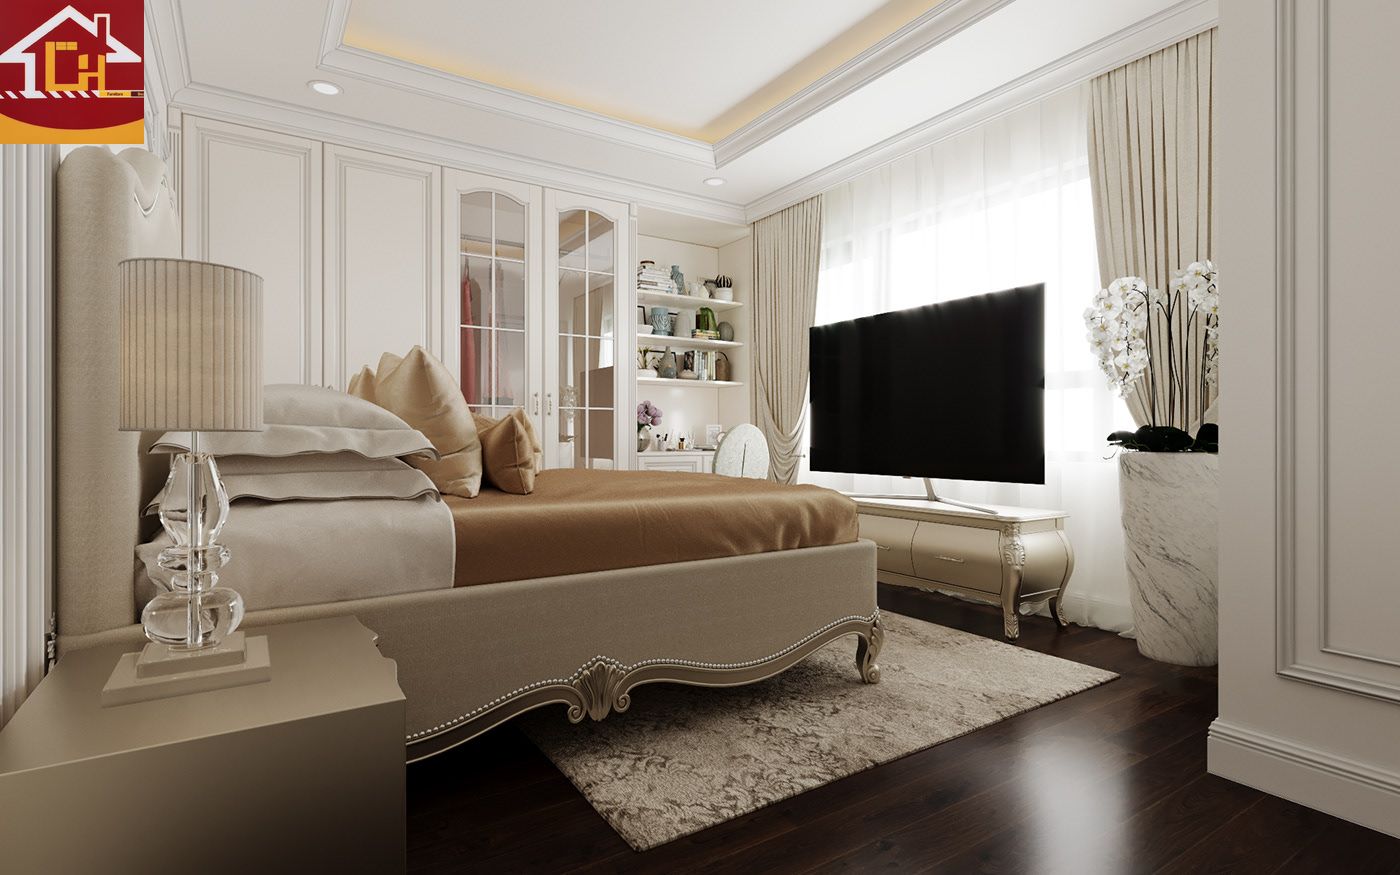 Thiết kế nội thất căn hộ 2 ngủ tại chung cư Vinhomes Symphony theo phong cách tân cổ điển